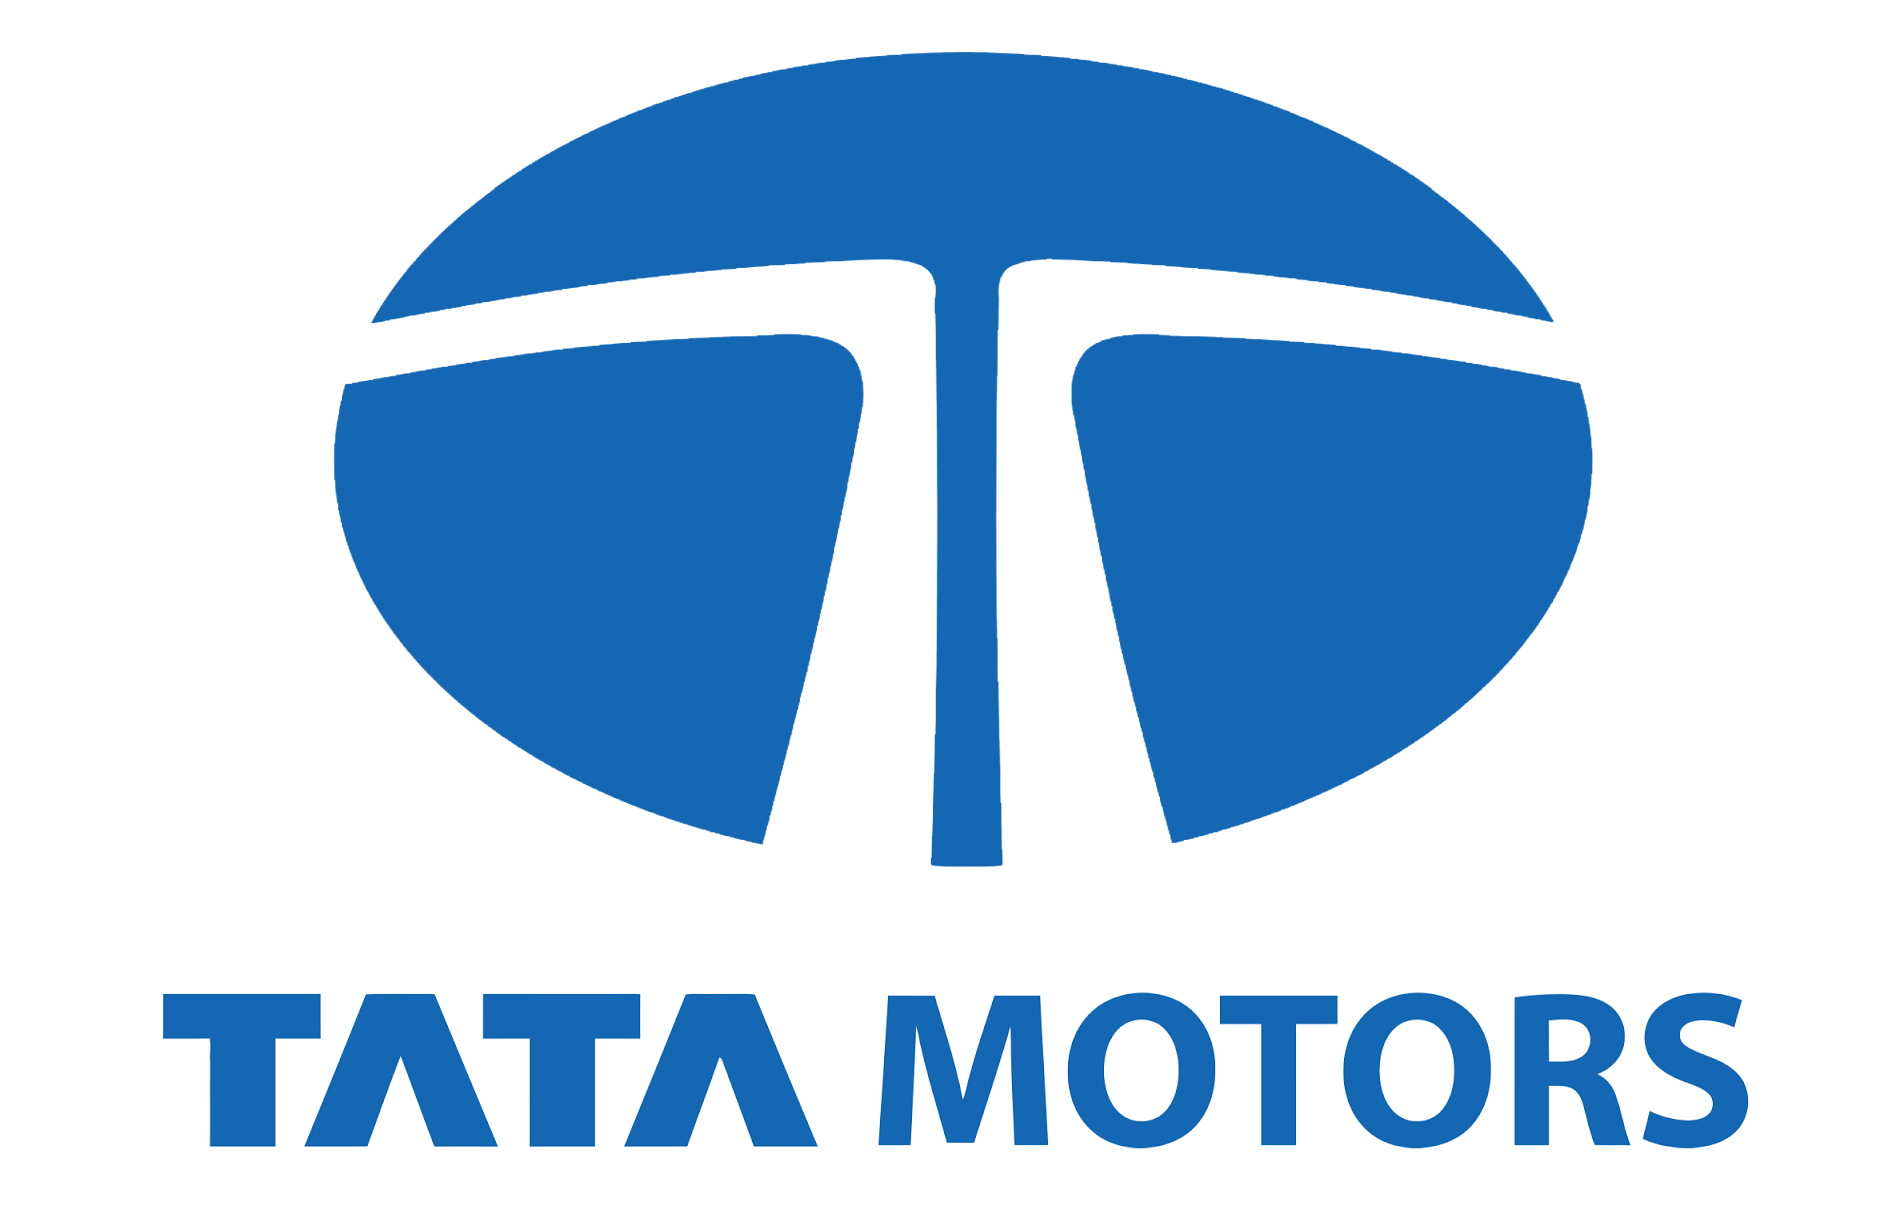 Tata Motors Cars Showroom - Trident Motors|Repair Services|Automotive